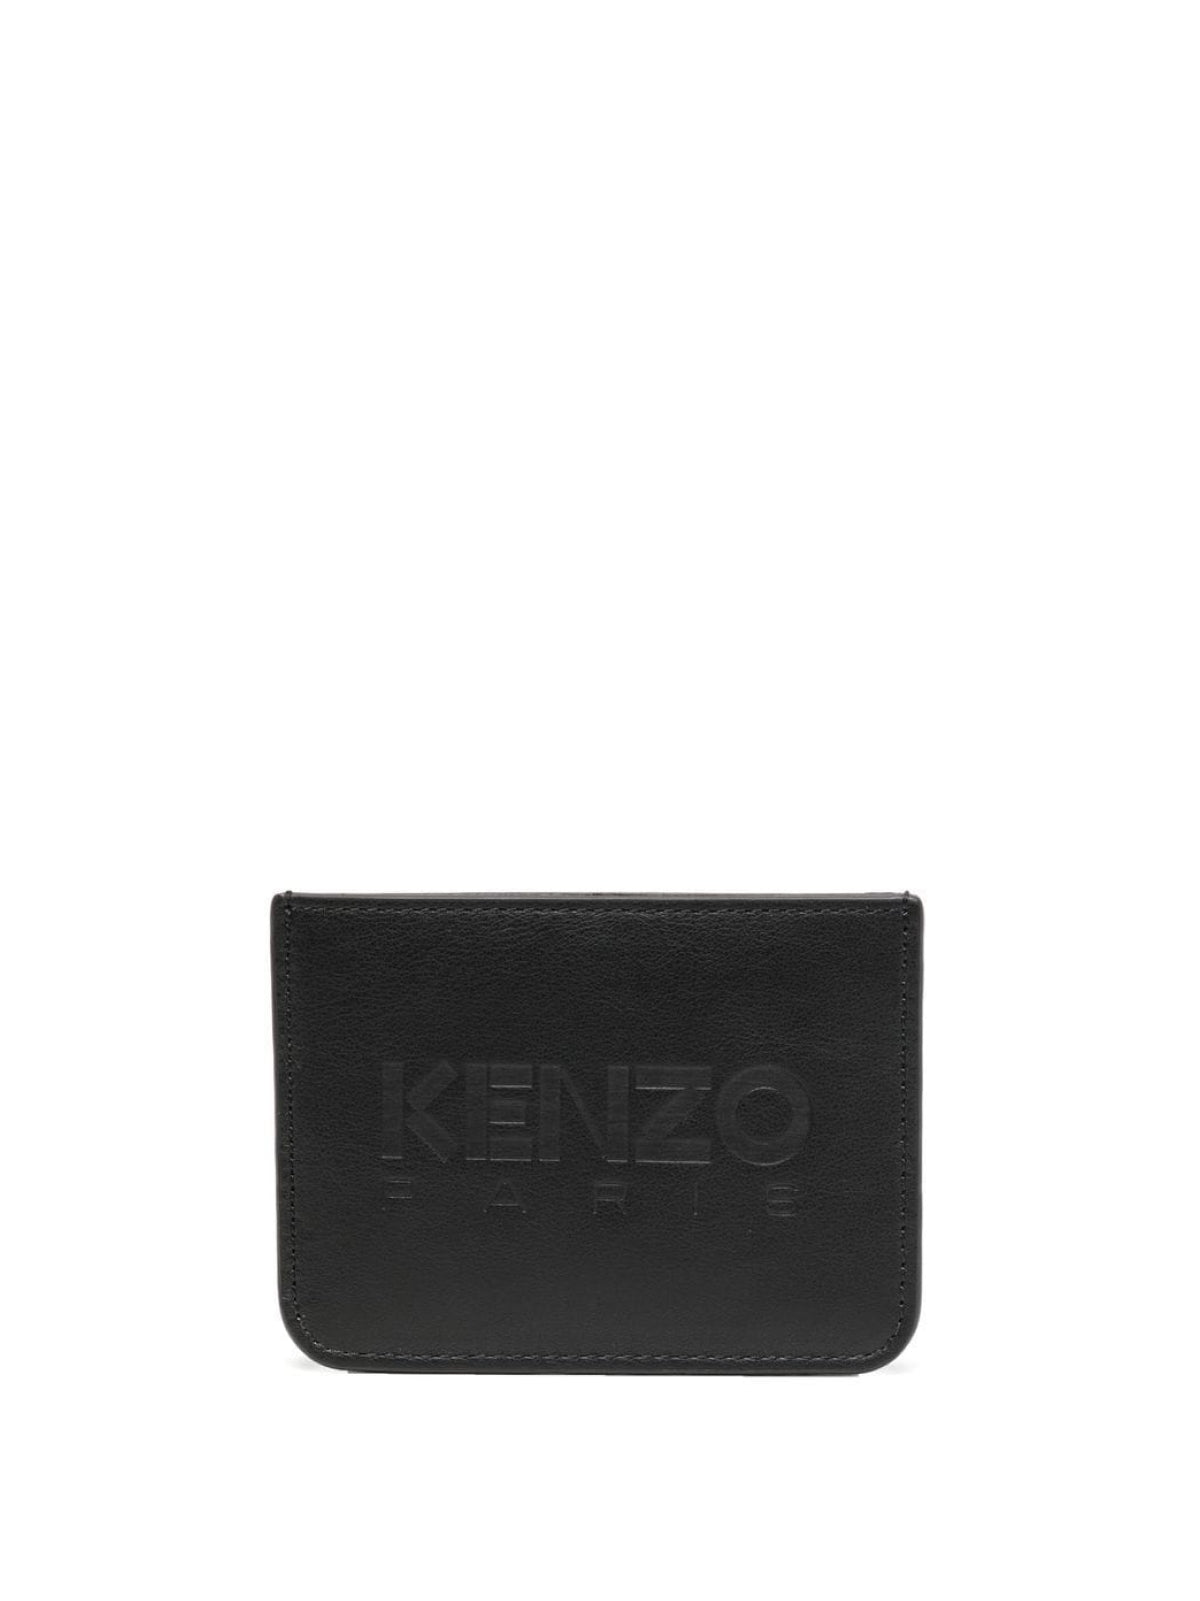 Kenzo-OUTLET-SALE-Logo Embossed Card Holder-ARCHIVIST